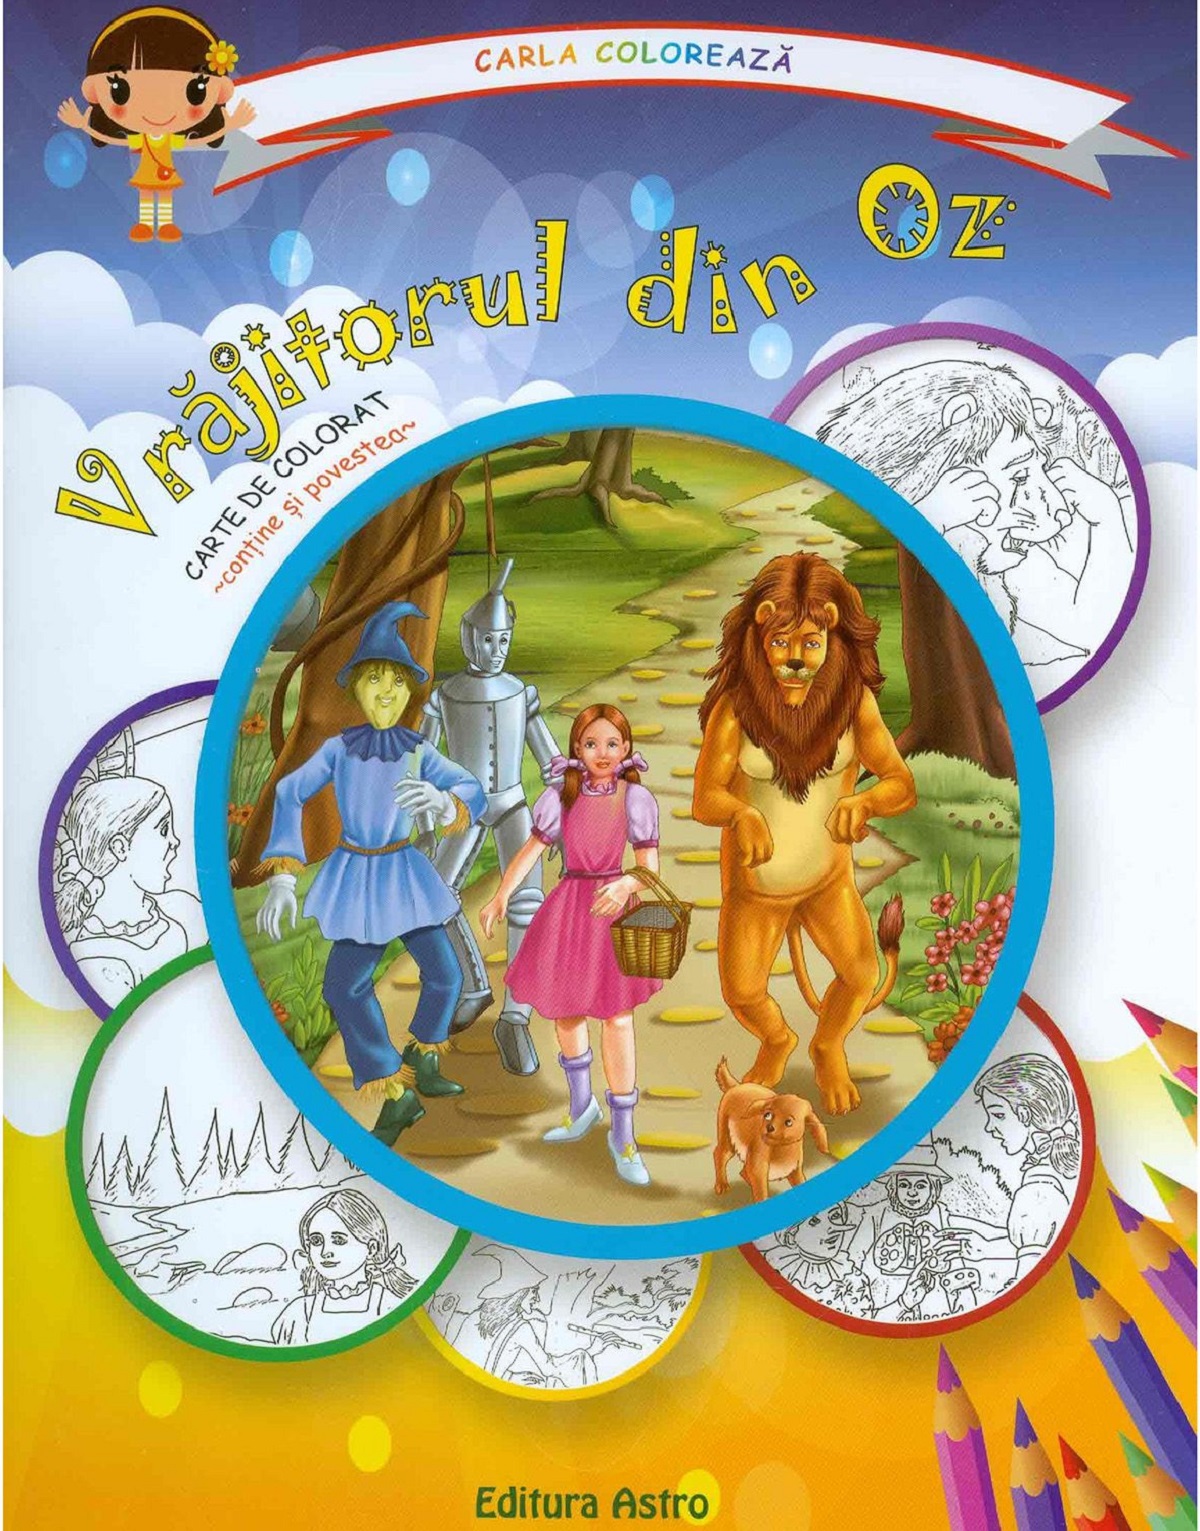 Vrajitorul din Oz: carte de colorat + poveste. Carla coloreaza